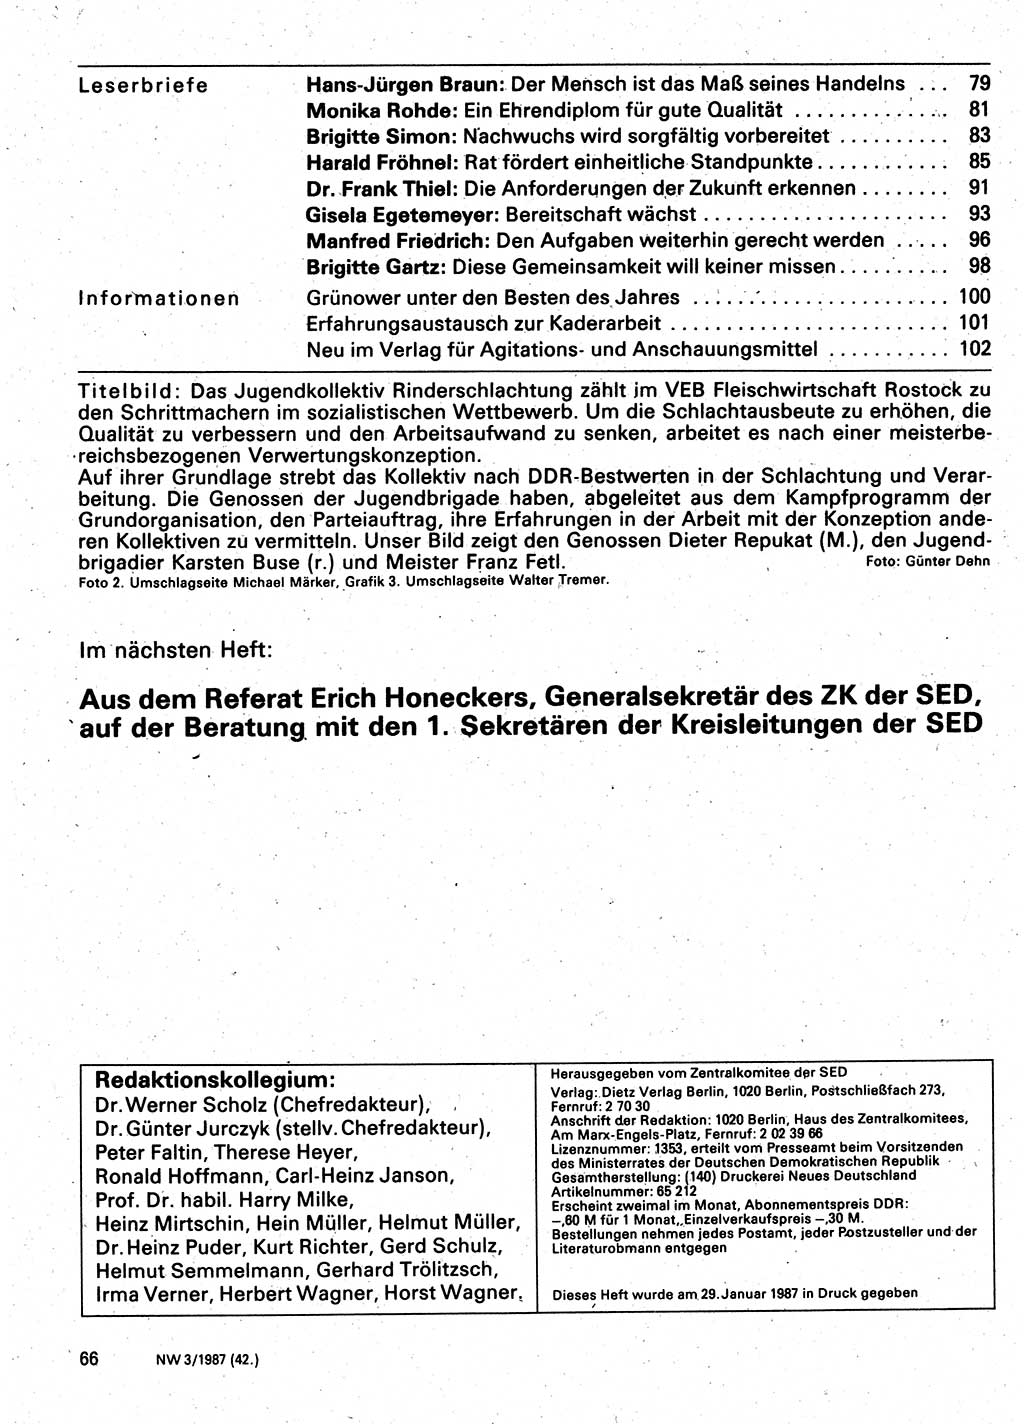 Neuer Weg (NW), Organ des Zentralkomitees (ZK) der SED (Sozialistische Einheitspartei Deutschlands) für Fragen des Parteilebens, 42. Jahrgang [Deutsche Demokratische Republik (DDR)] 1987, Seite 66 (NW ZK SED DDR 1987, S. 66)